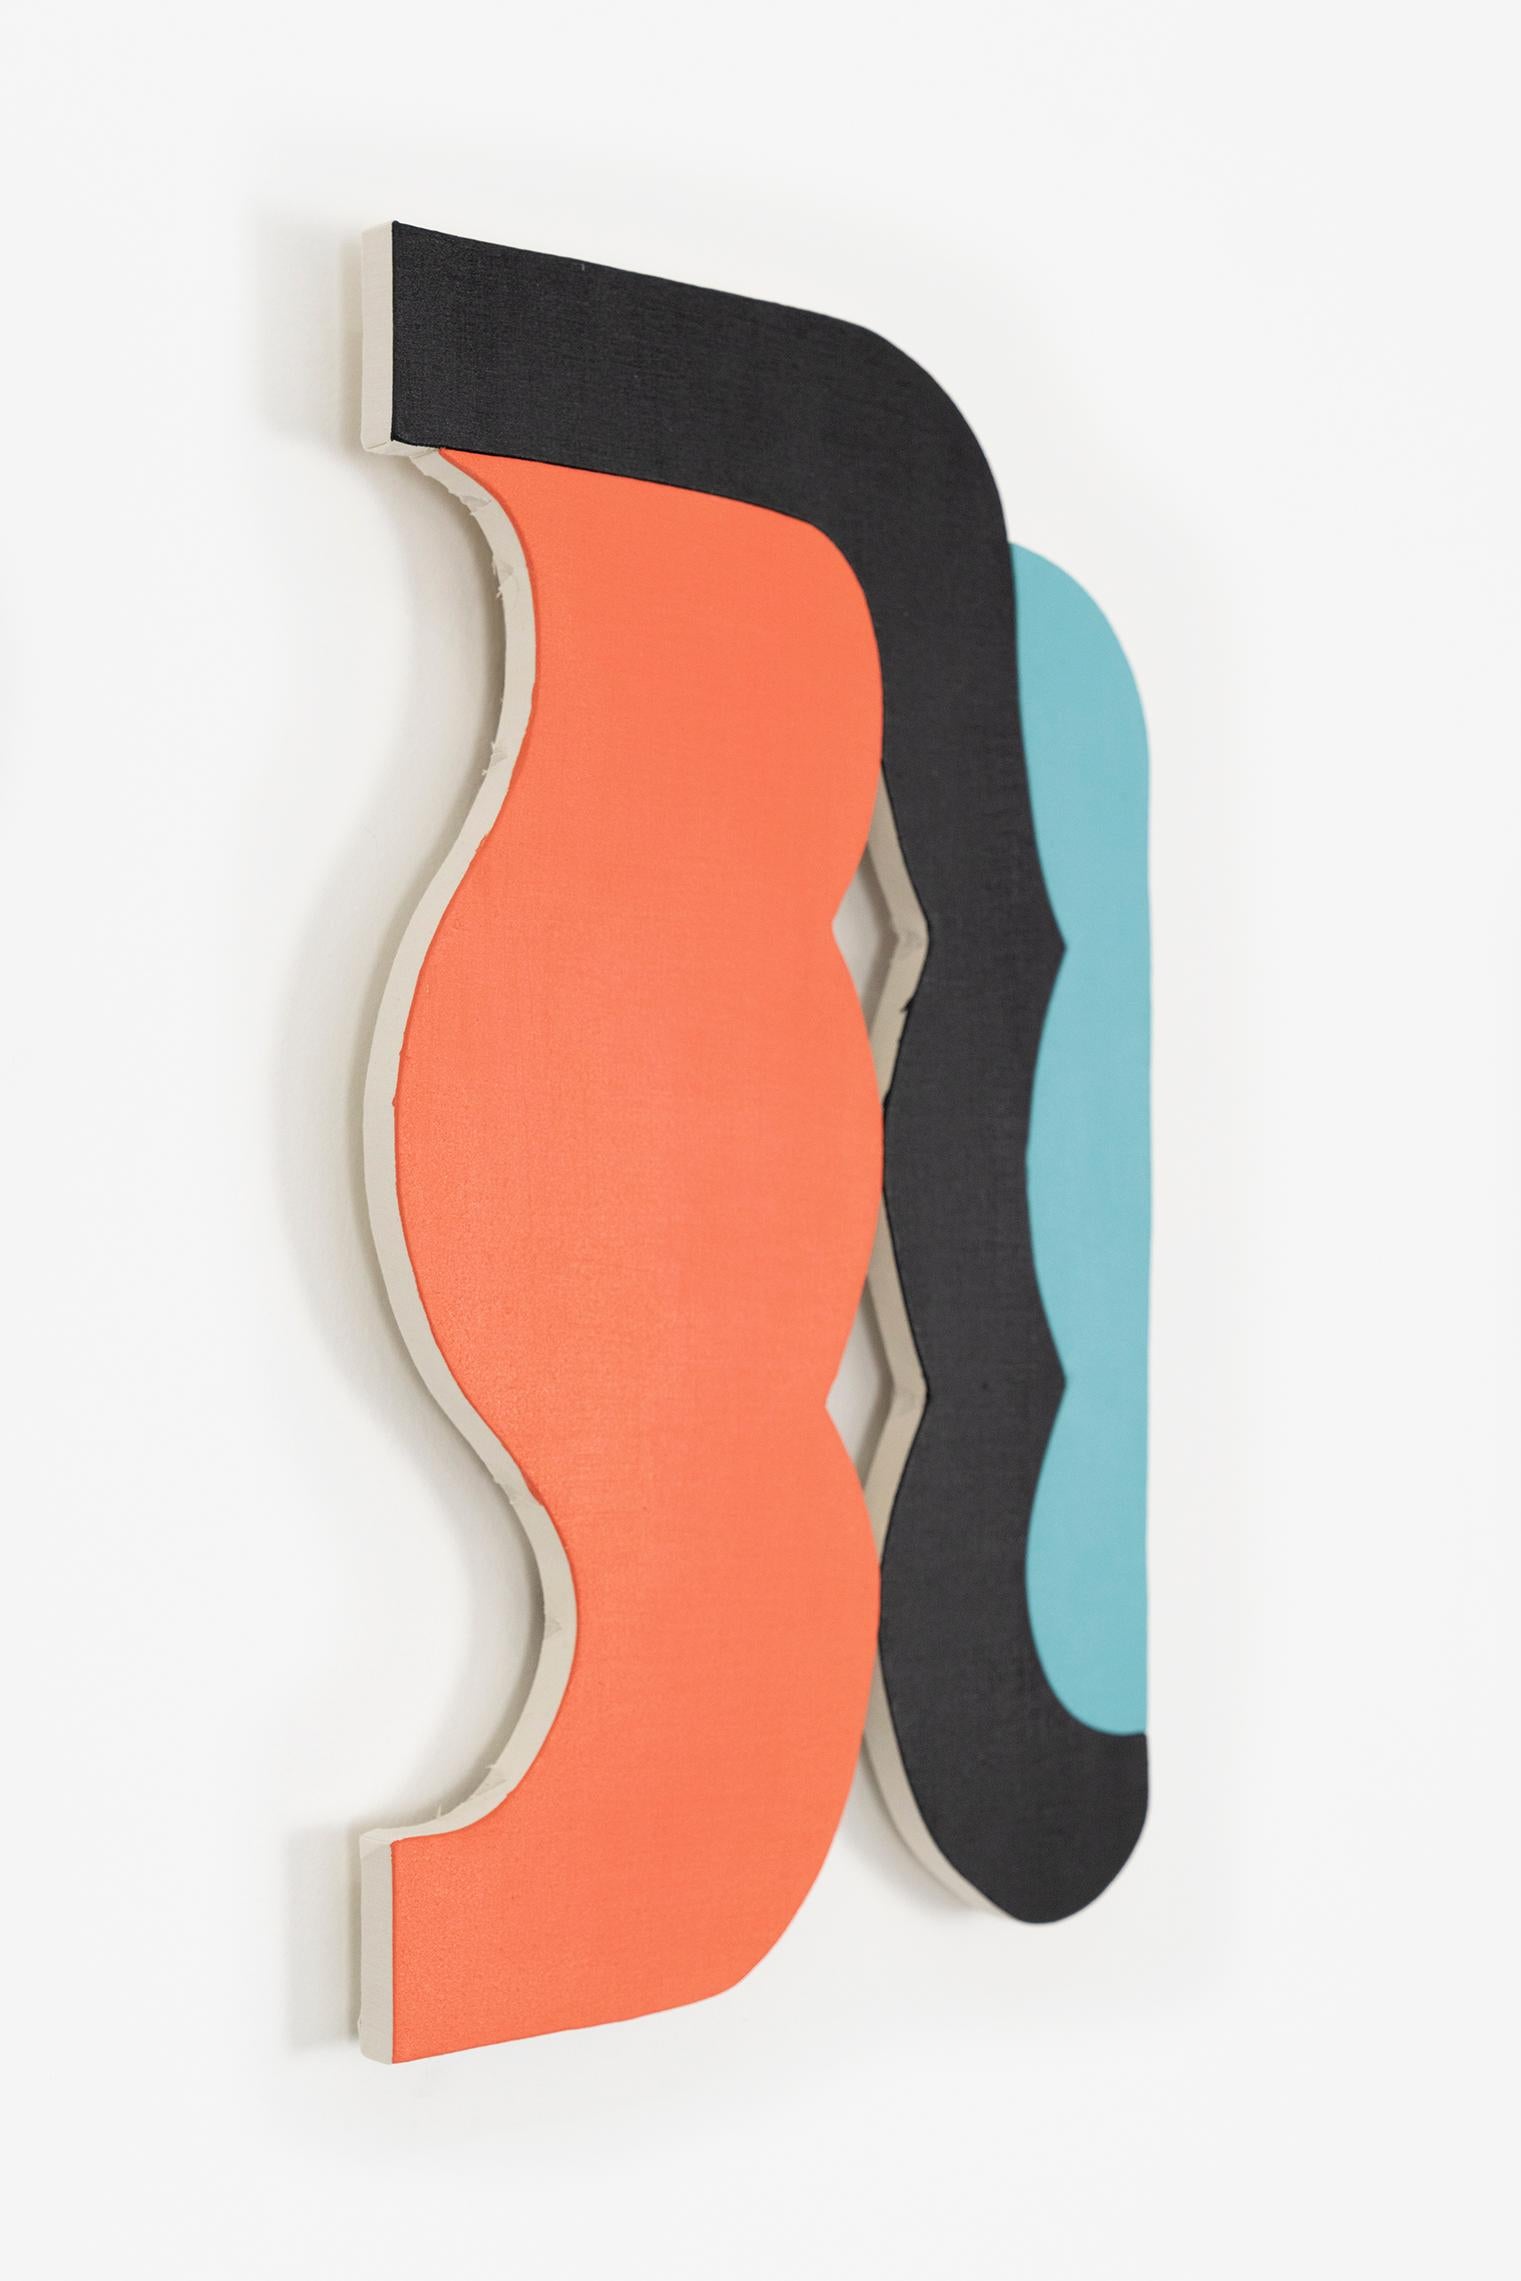 „21-9“ Wandskulptur – orange, teal, blau, schwarz, lachs, kühn, klein – Painting von Jason Matherly